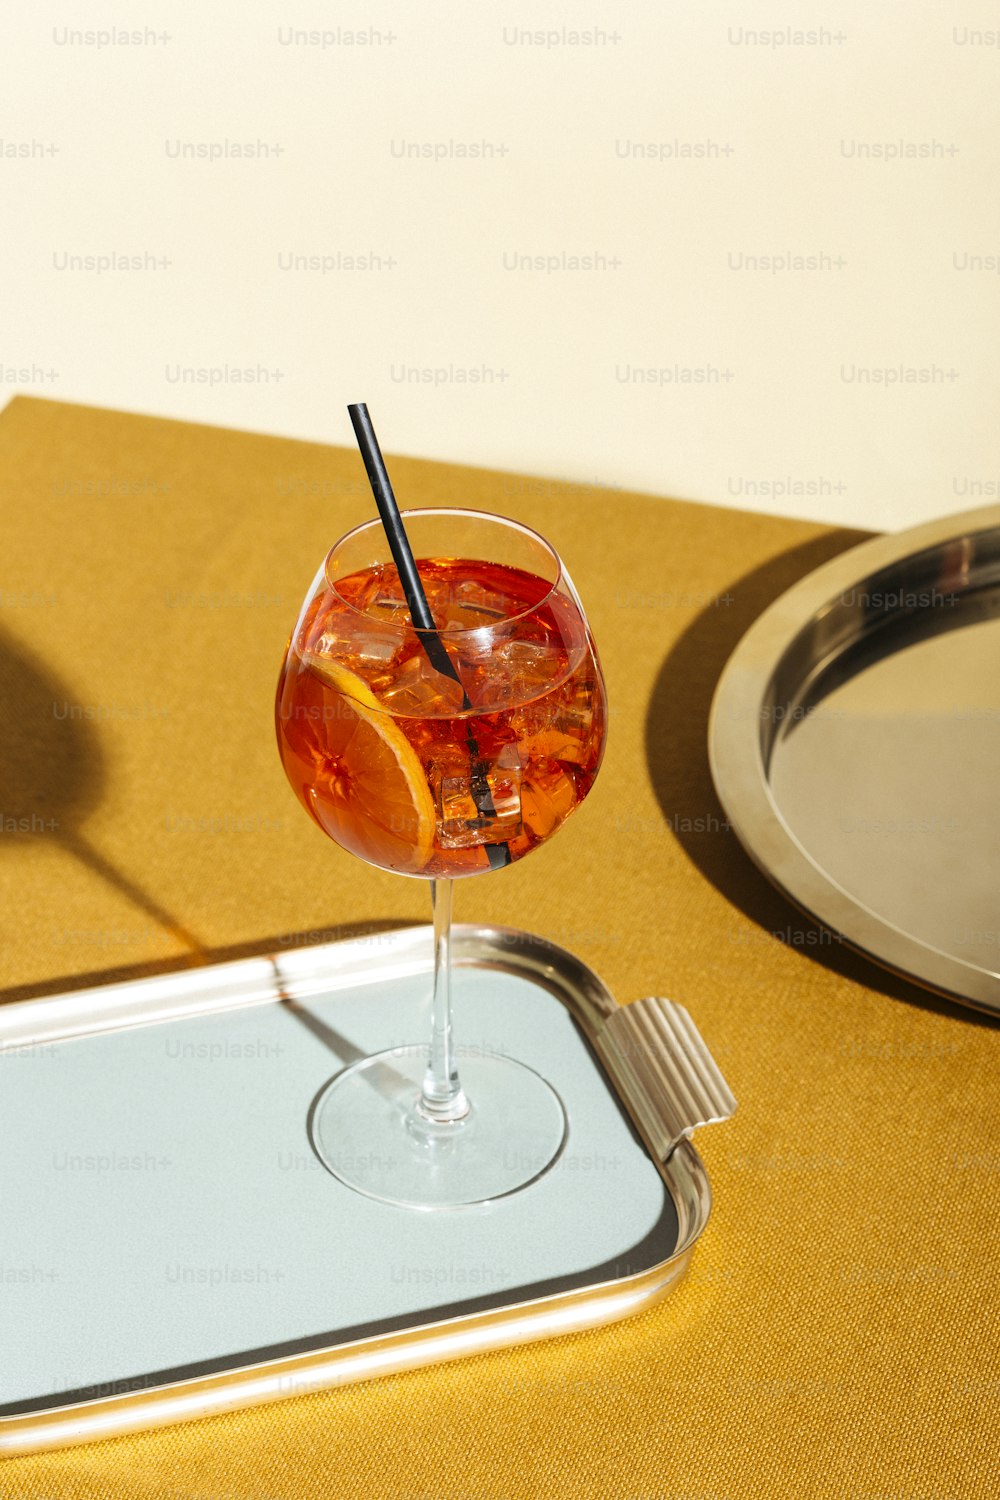 Spritz veneziano, ein Aperitif-Cocktail mit Prosecco oder weißem Sekt, Bitter, Soda, Eis und einer Scheibe Orange, in einem Calix auf einem Tisch, Pop-Grafik-Stil